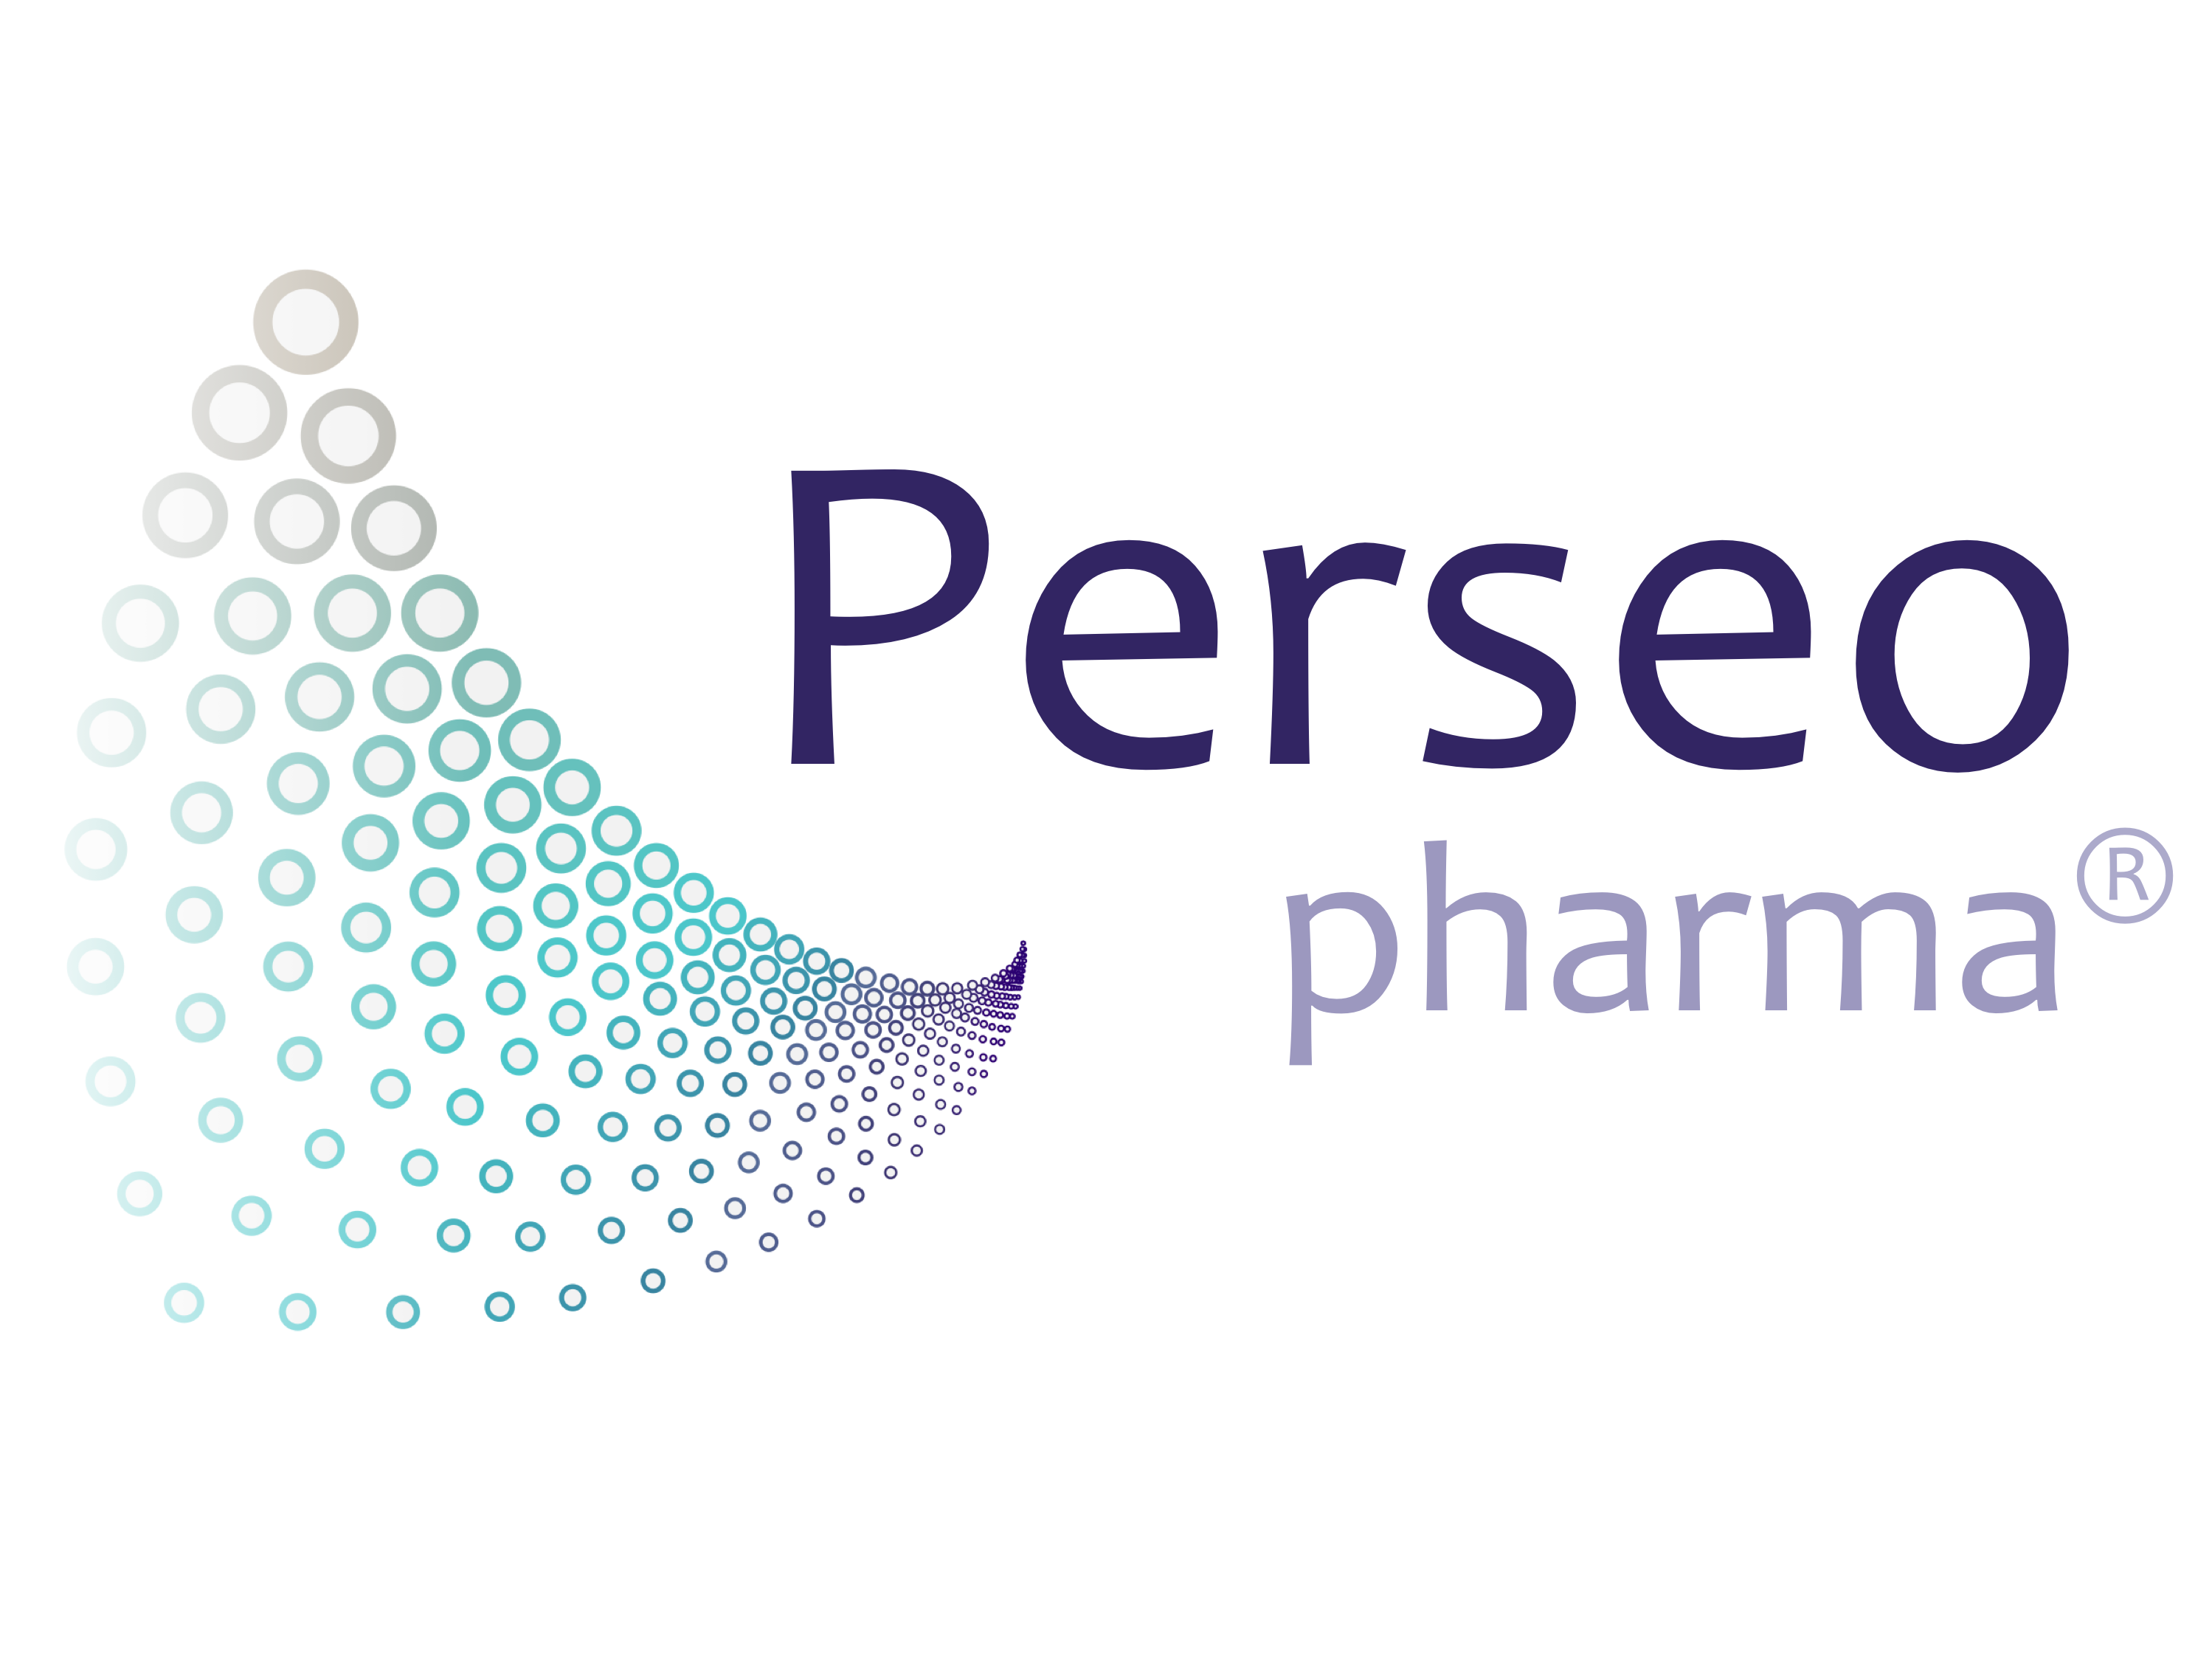 Perseo pharma